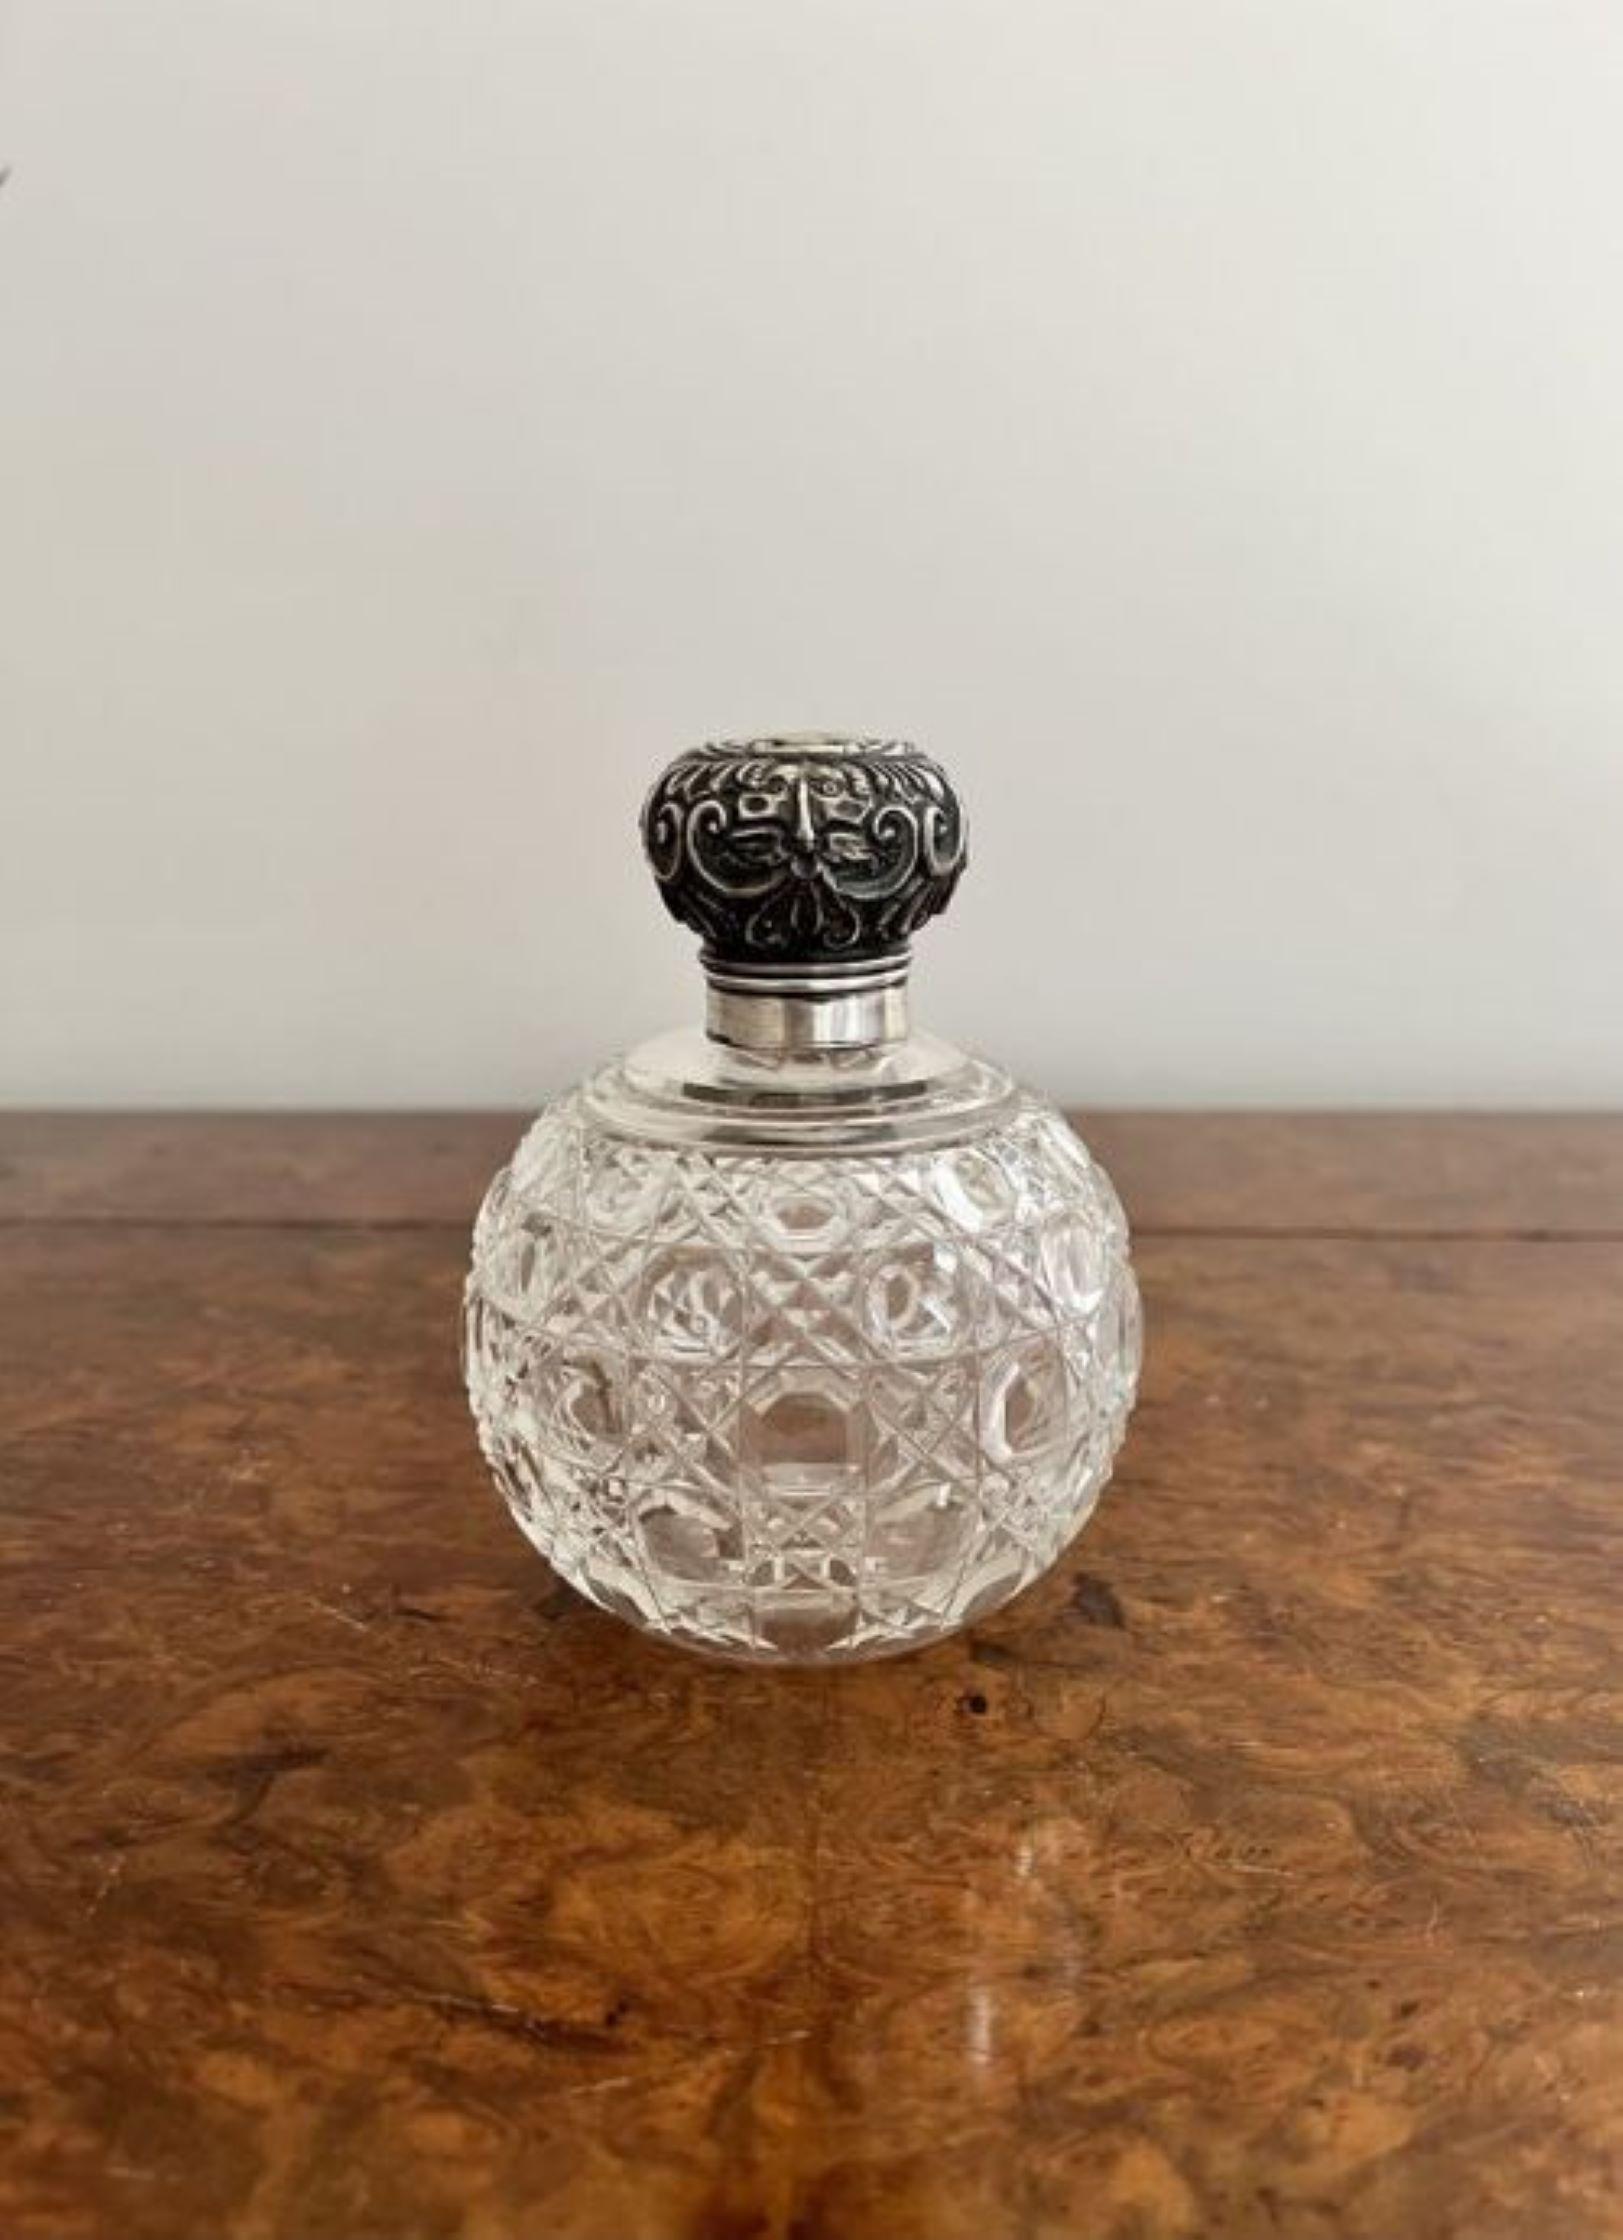 Qualität antiken viktorianischen Silber montiert Parfümflasche mit einer Qualität antiken viktorianischen Silber montiert Parfümflasche mit einem geschliffenen Glas runden Körper und einem verzierten Silber oben.